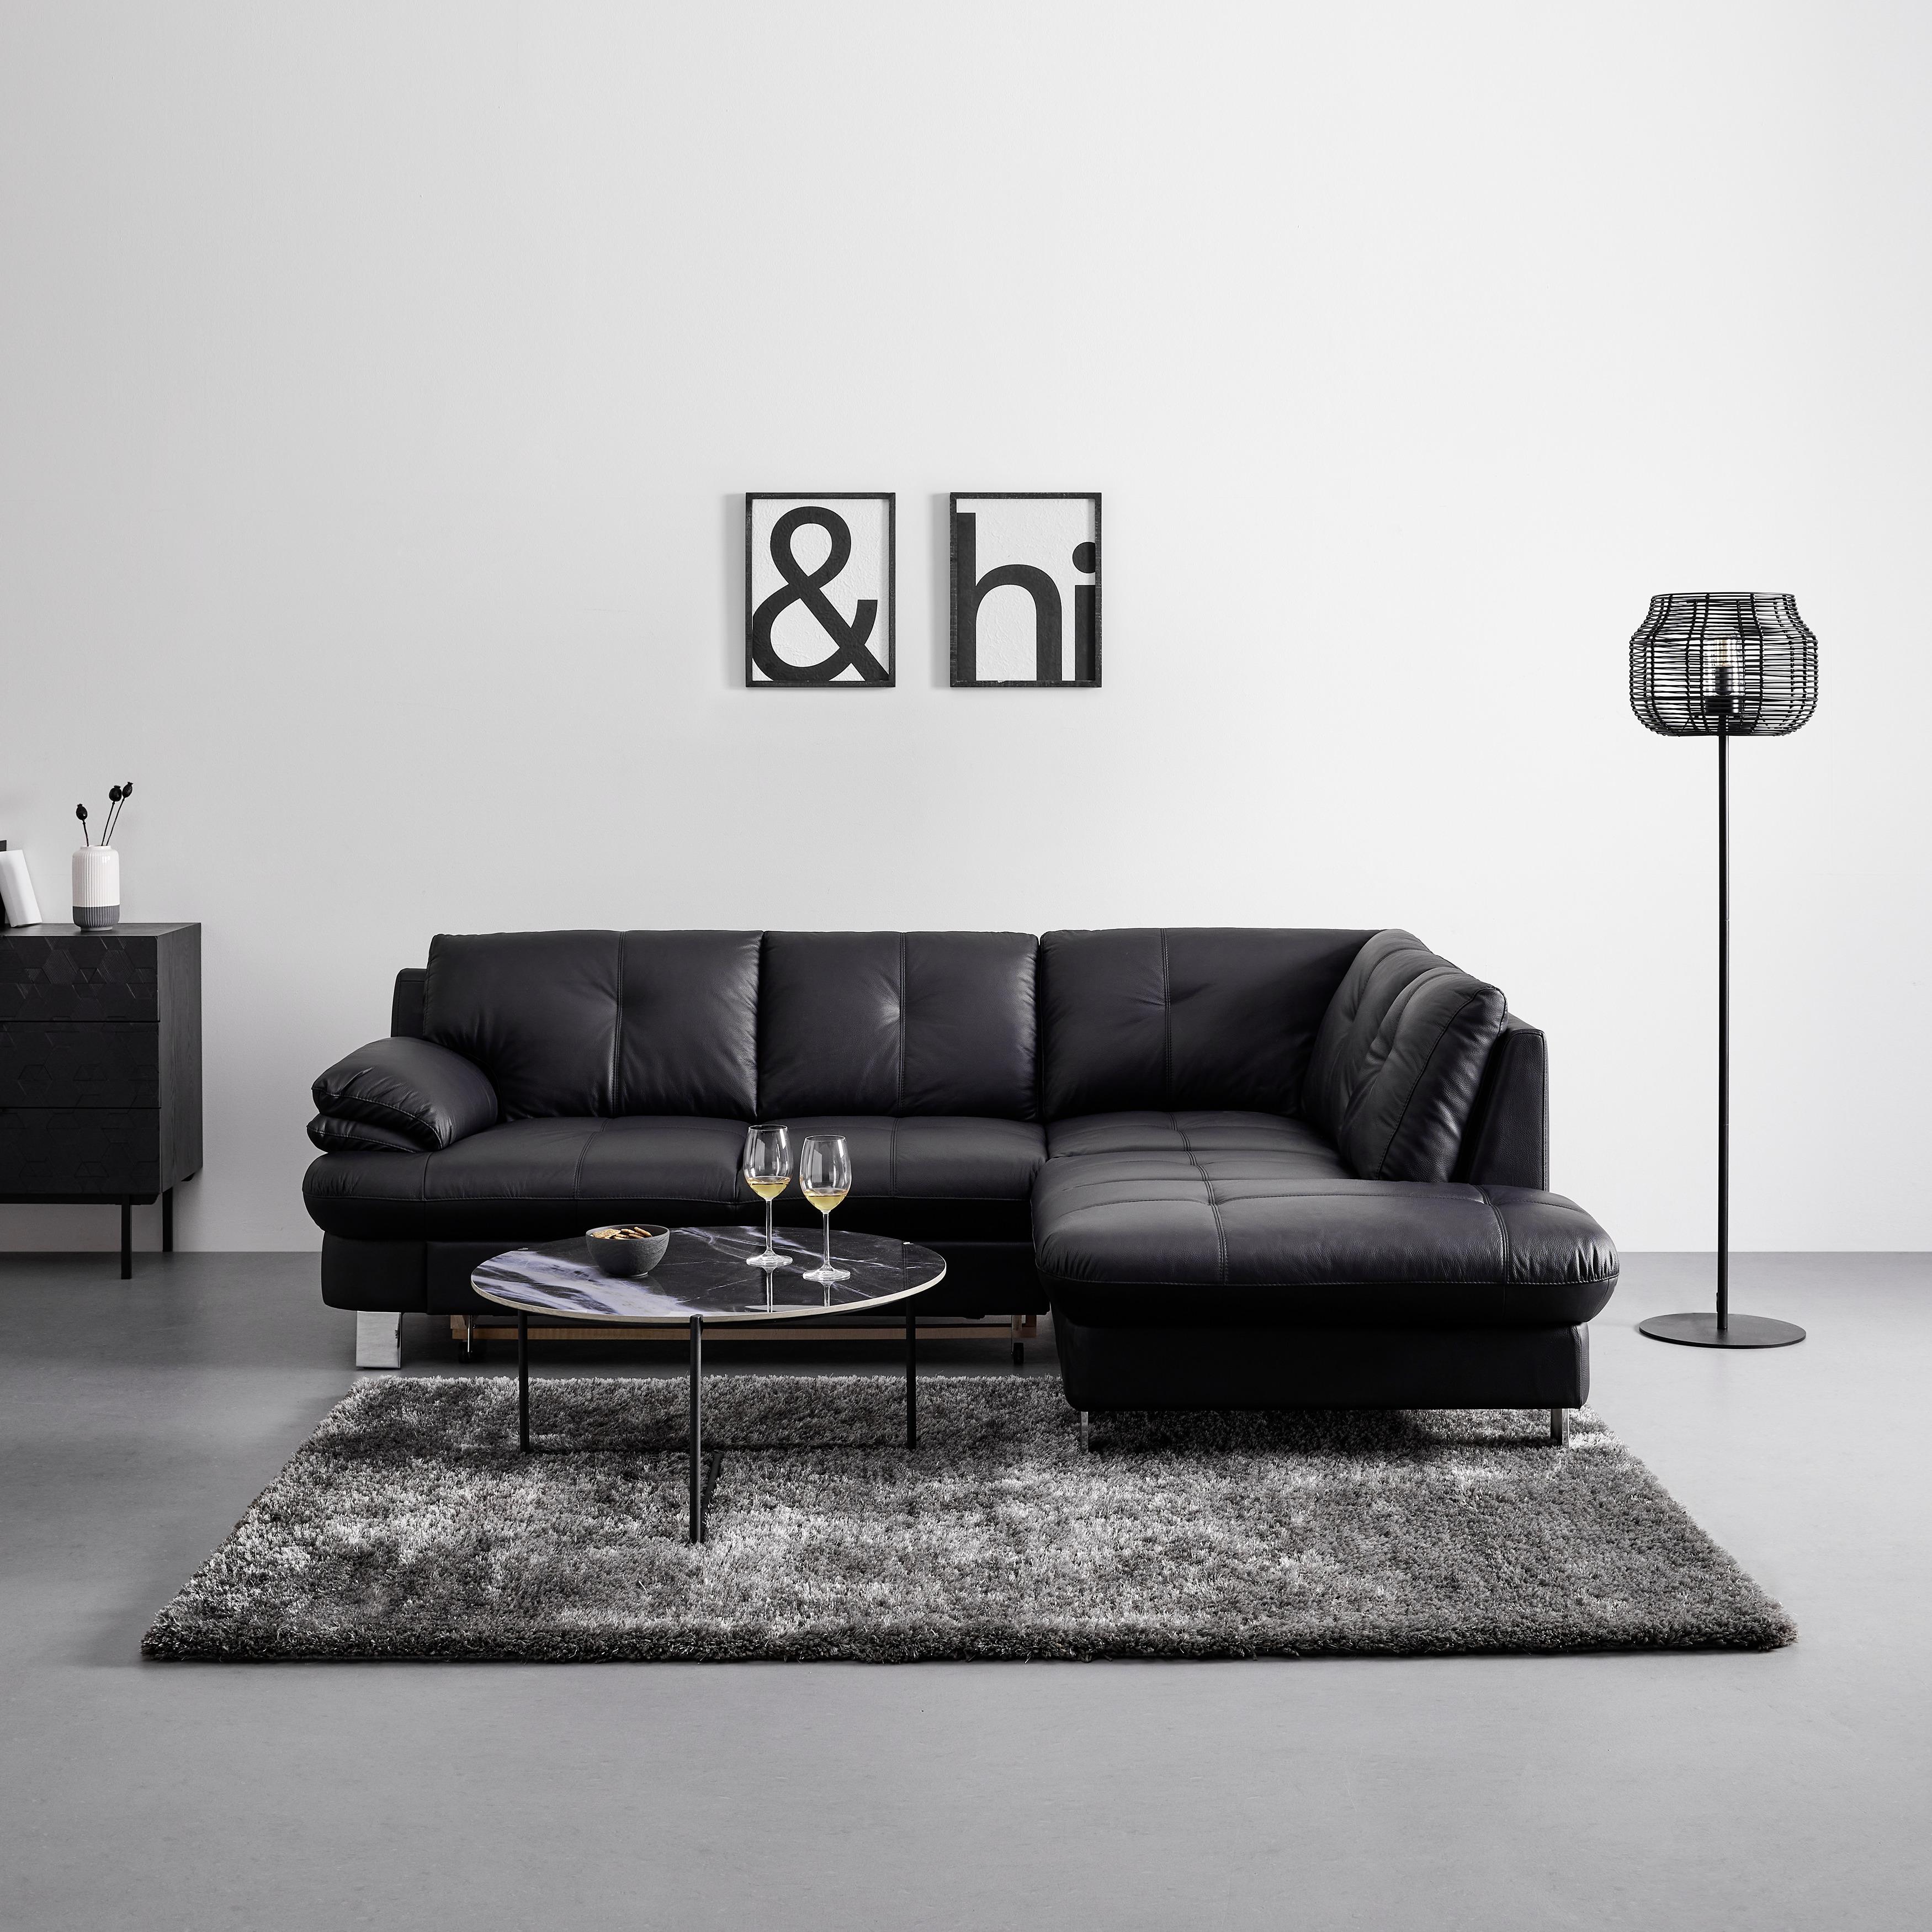 Sedežna Garnitura Bernadette I I, Usnjena - barve kroma/črna, Moderno, kovina/tekstil (247/82/185cm) - Bessagi Home